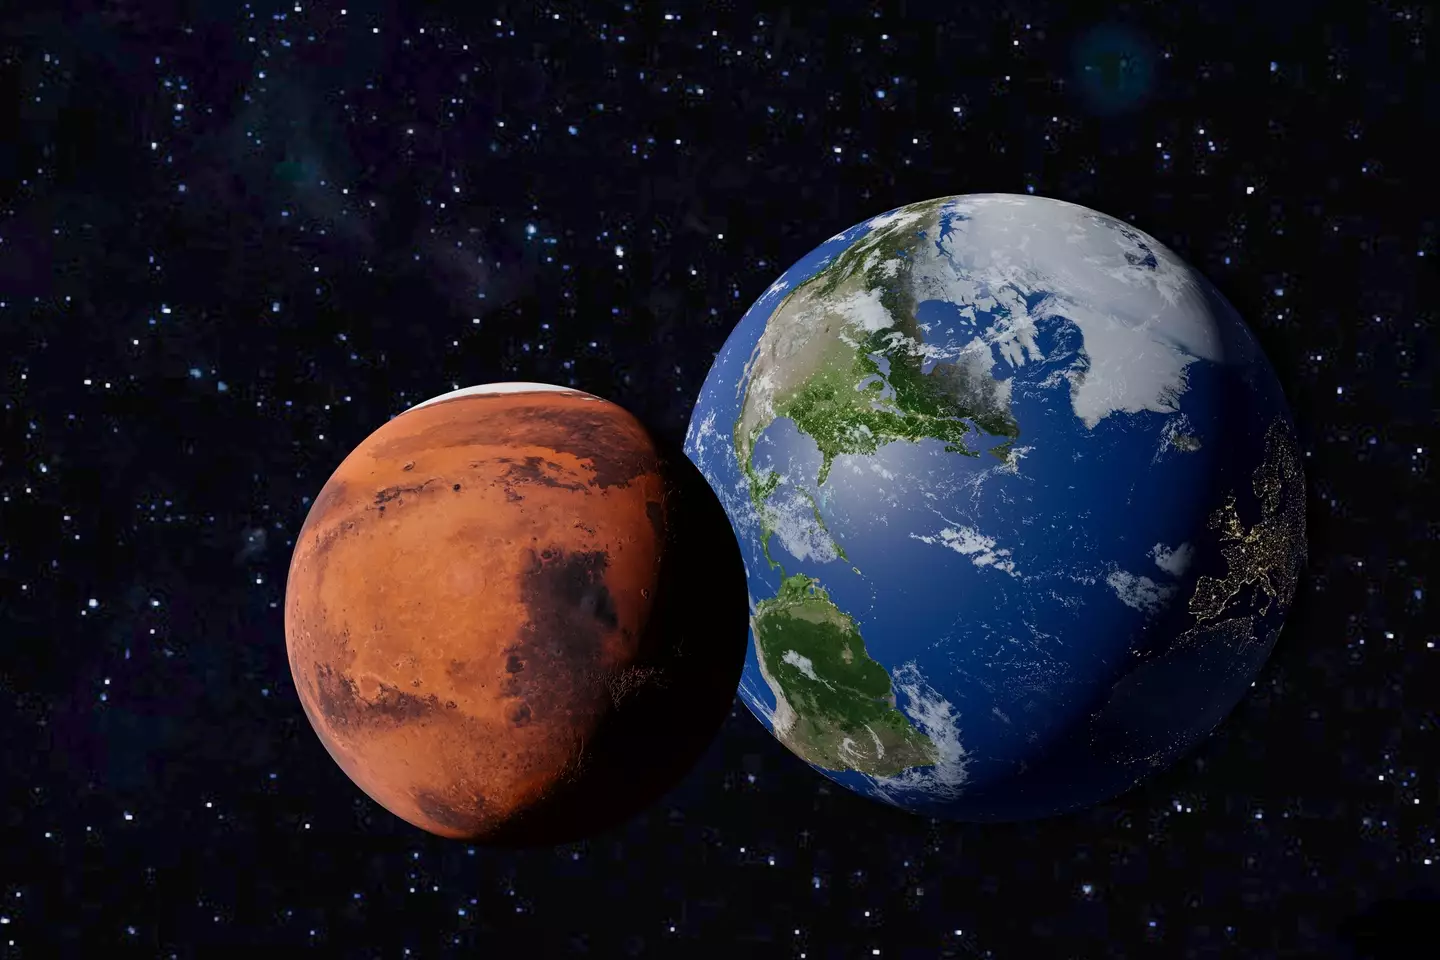 Wetenschappers denken dat het driemaal de massa van de aarde kan bereiken (Baac3nes/Getty Images)